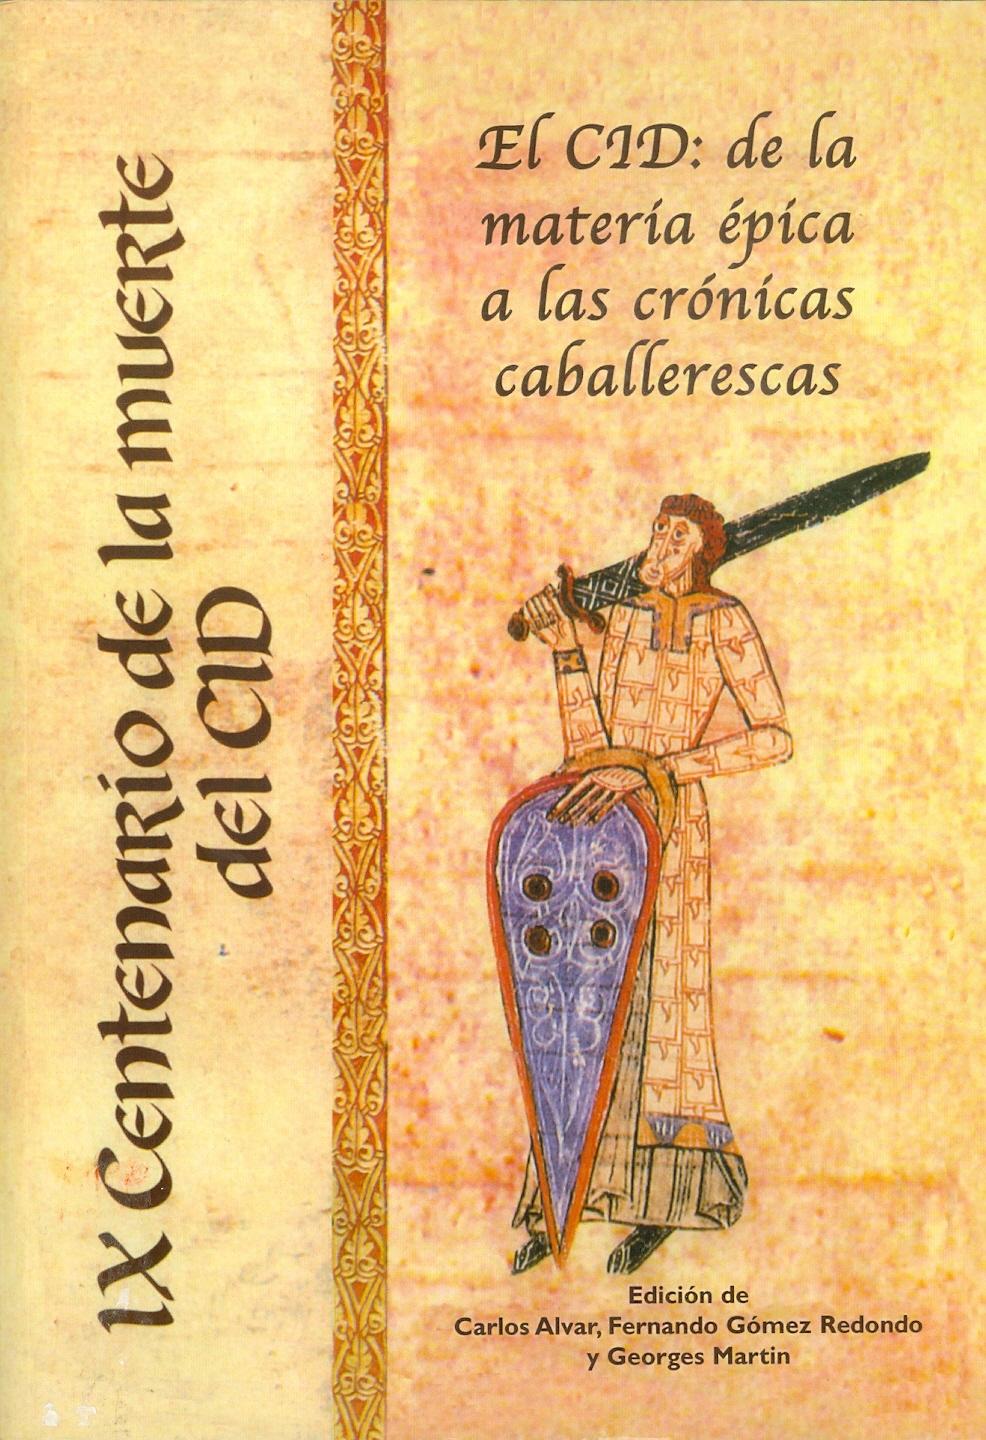 El Cid: de la materia épica a las crónicas caballerescas "Congreso Intern. IX Centenario de la Muerte del Cid". 